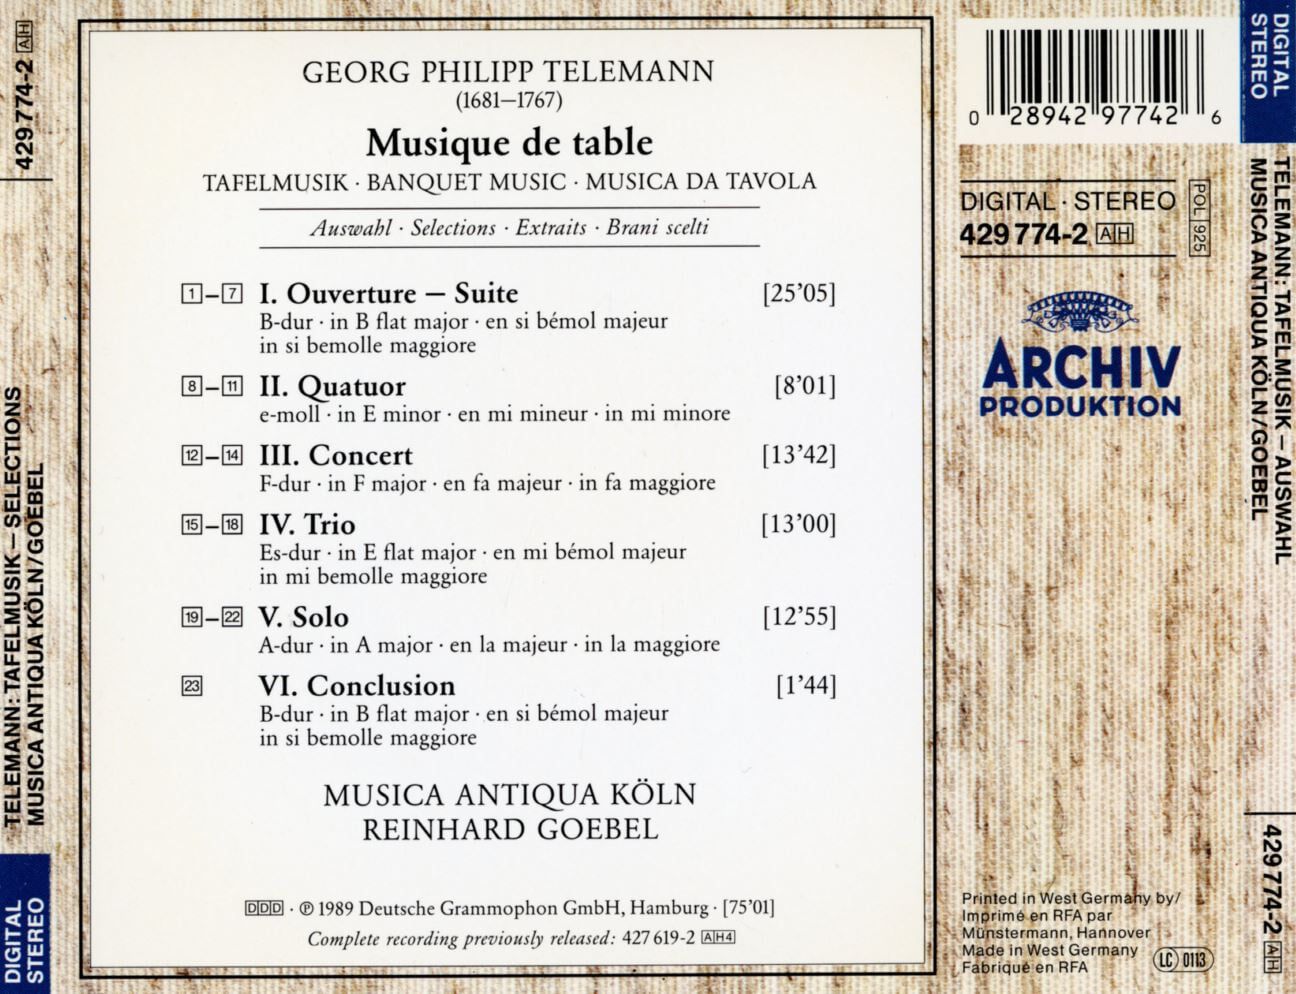 무지카 안티과 쾰른 - Musica Antiqua Koln - Telemann Tafelmusik Musique De Table-Auswahl Selections [독일발매]